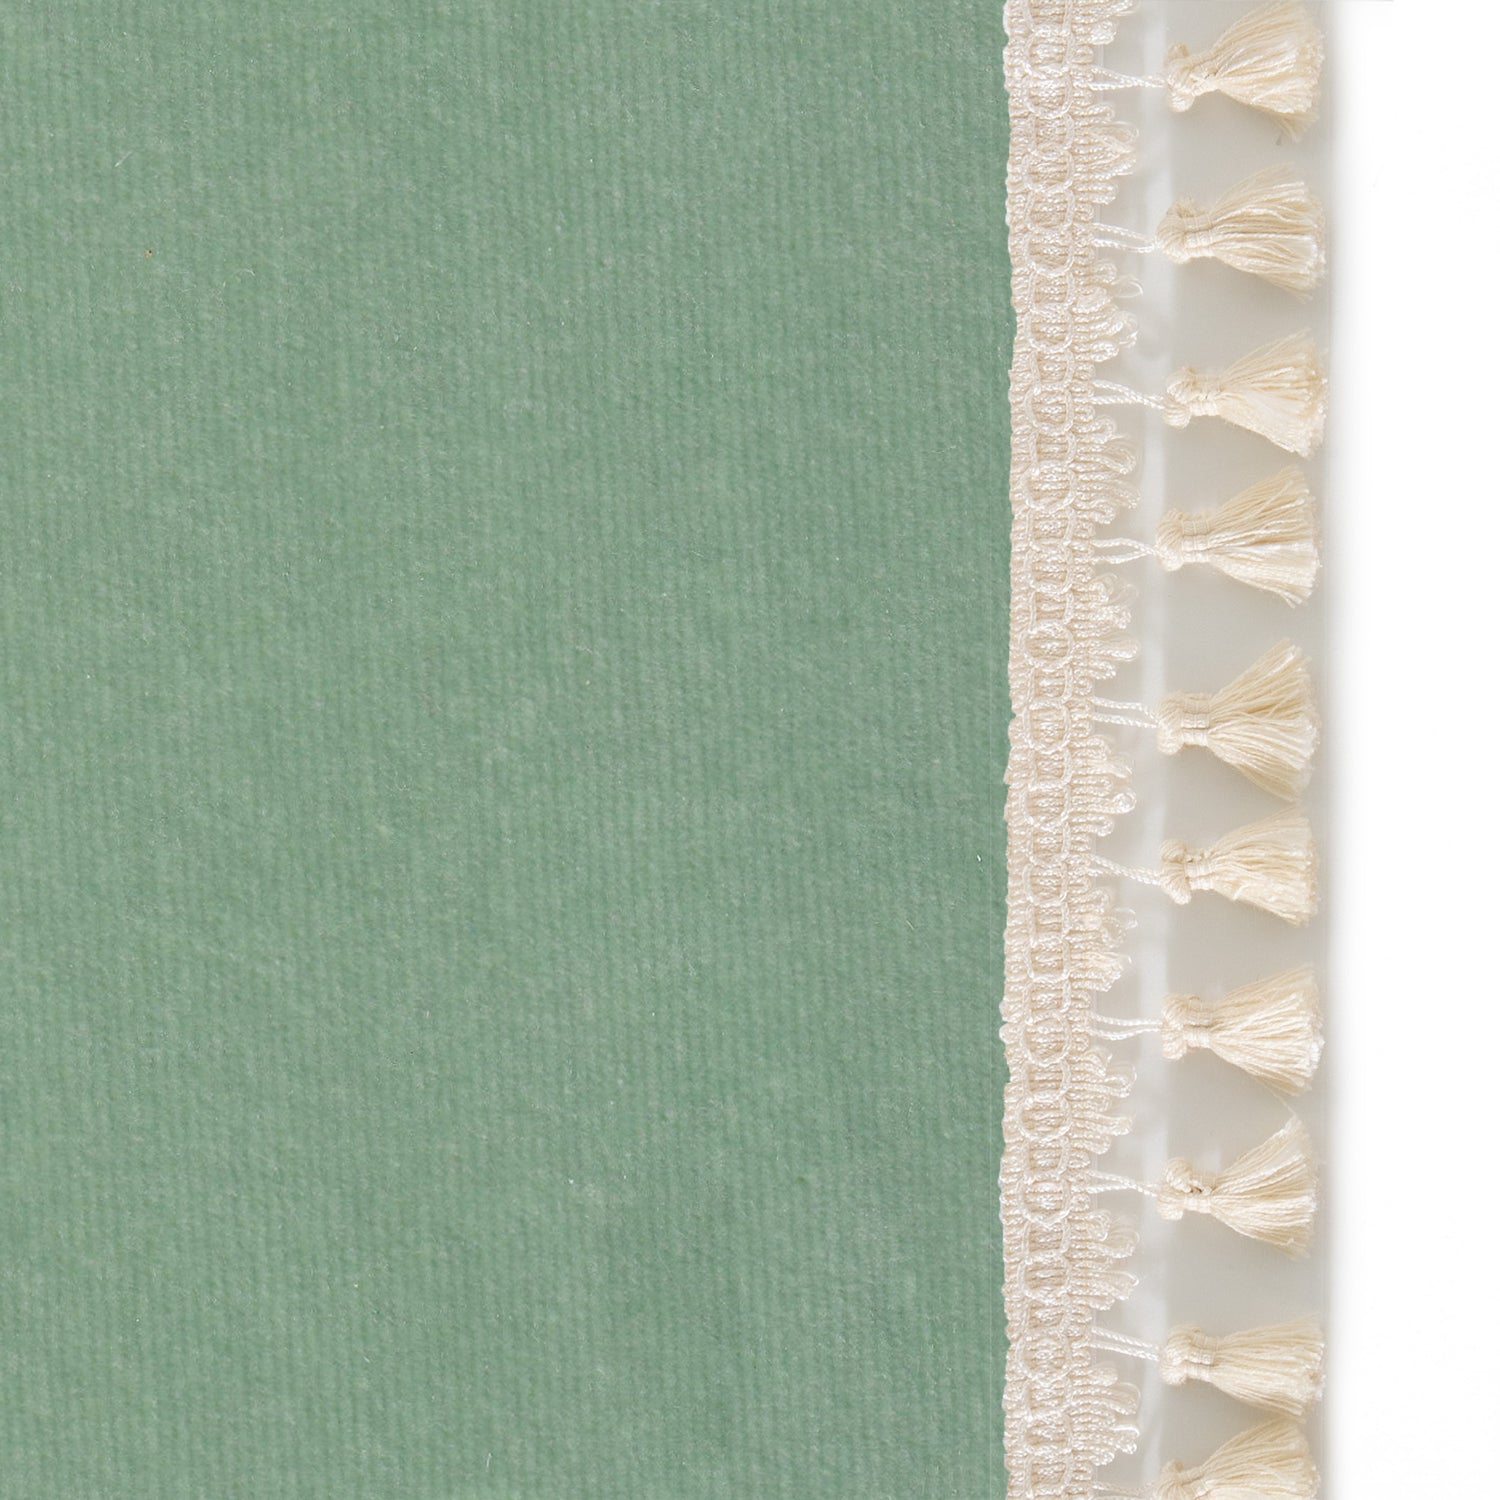 Upclose picture of Sea Salt Velvet custom Blue Greencurtain with cream tassel trim